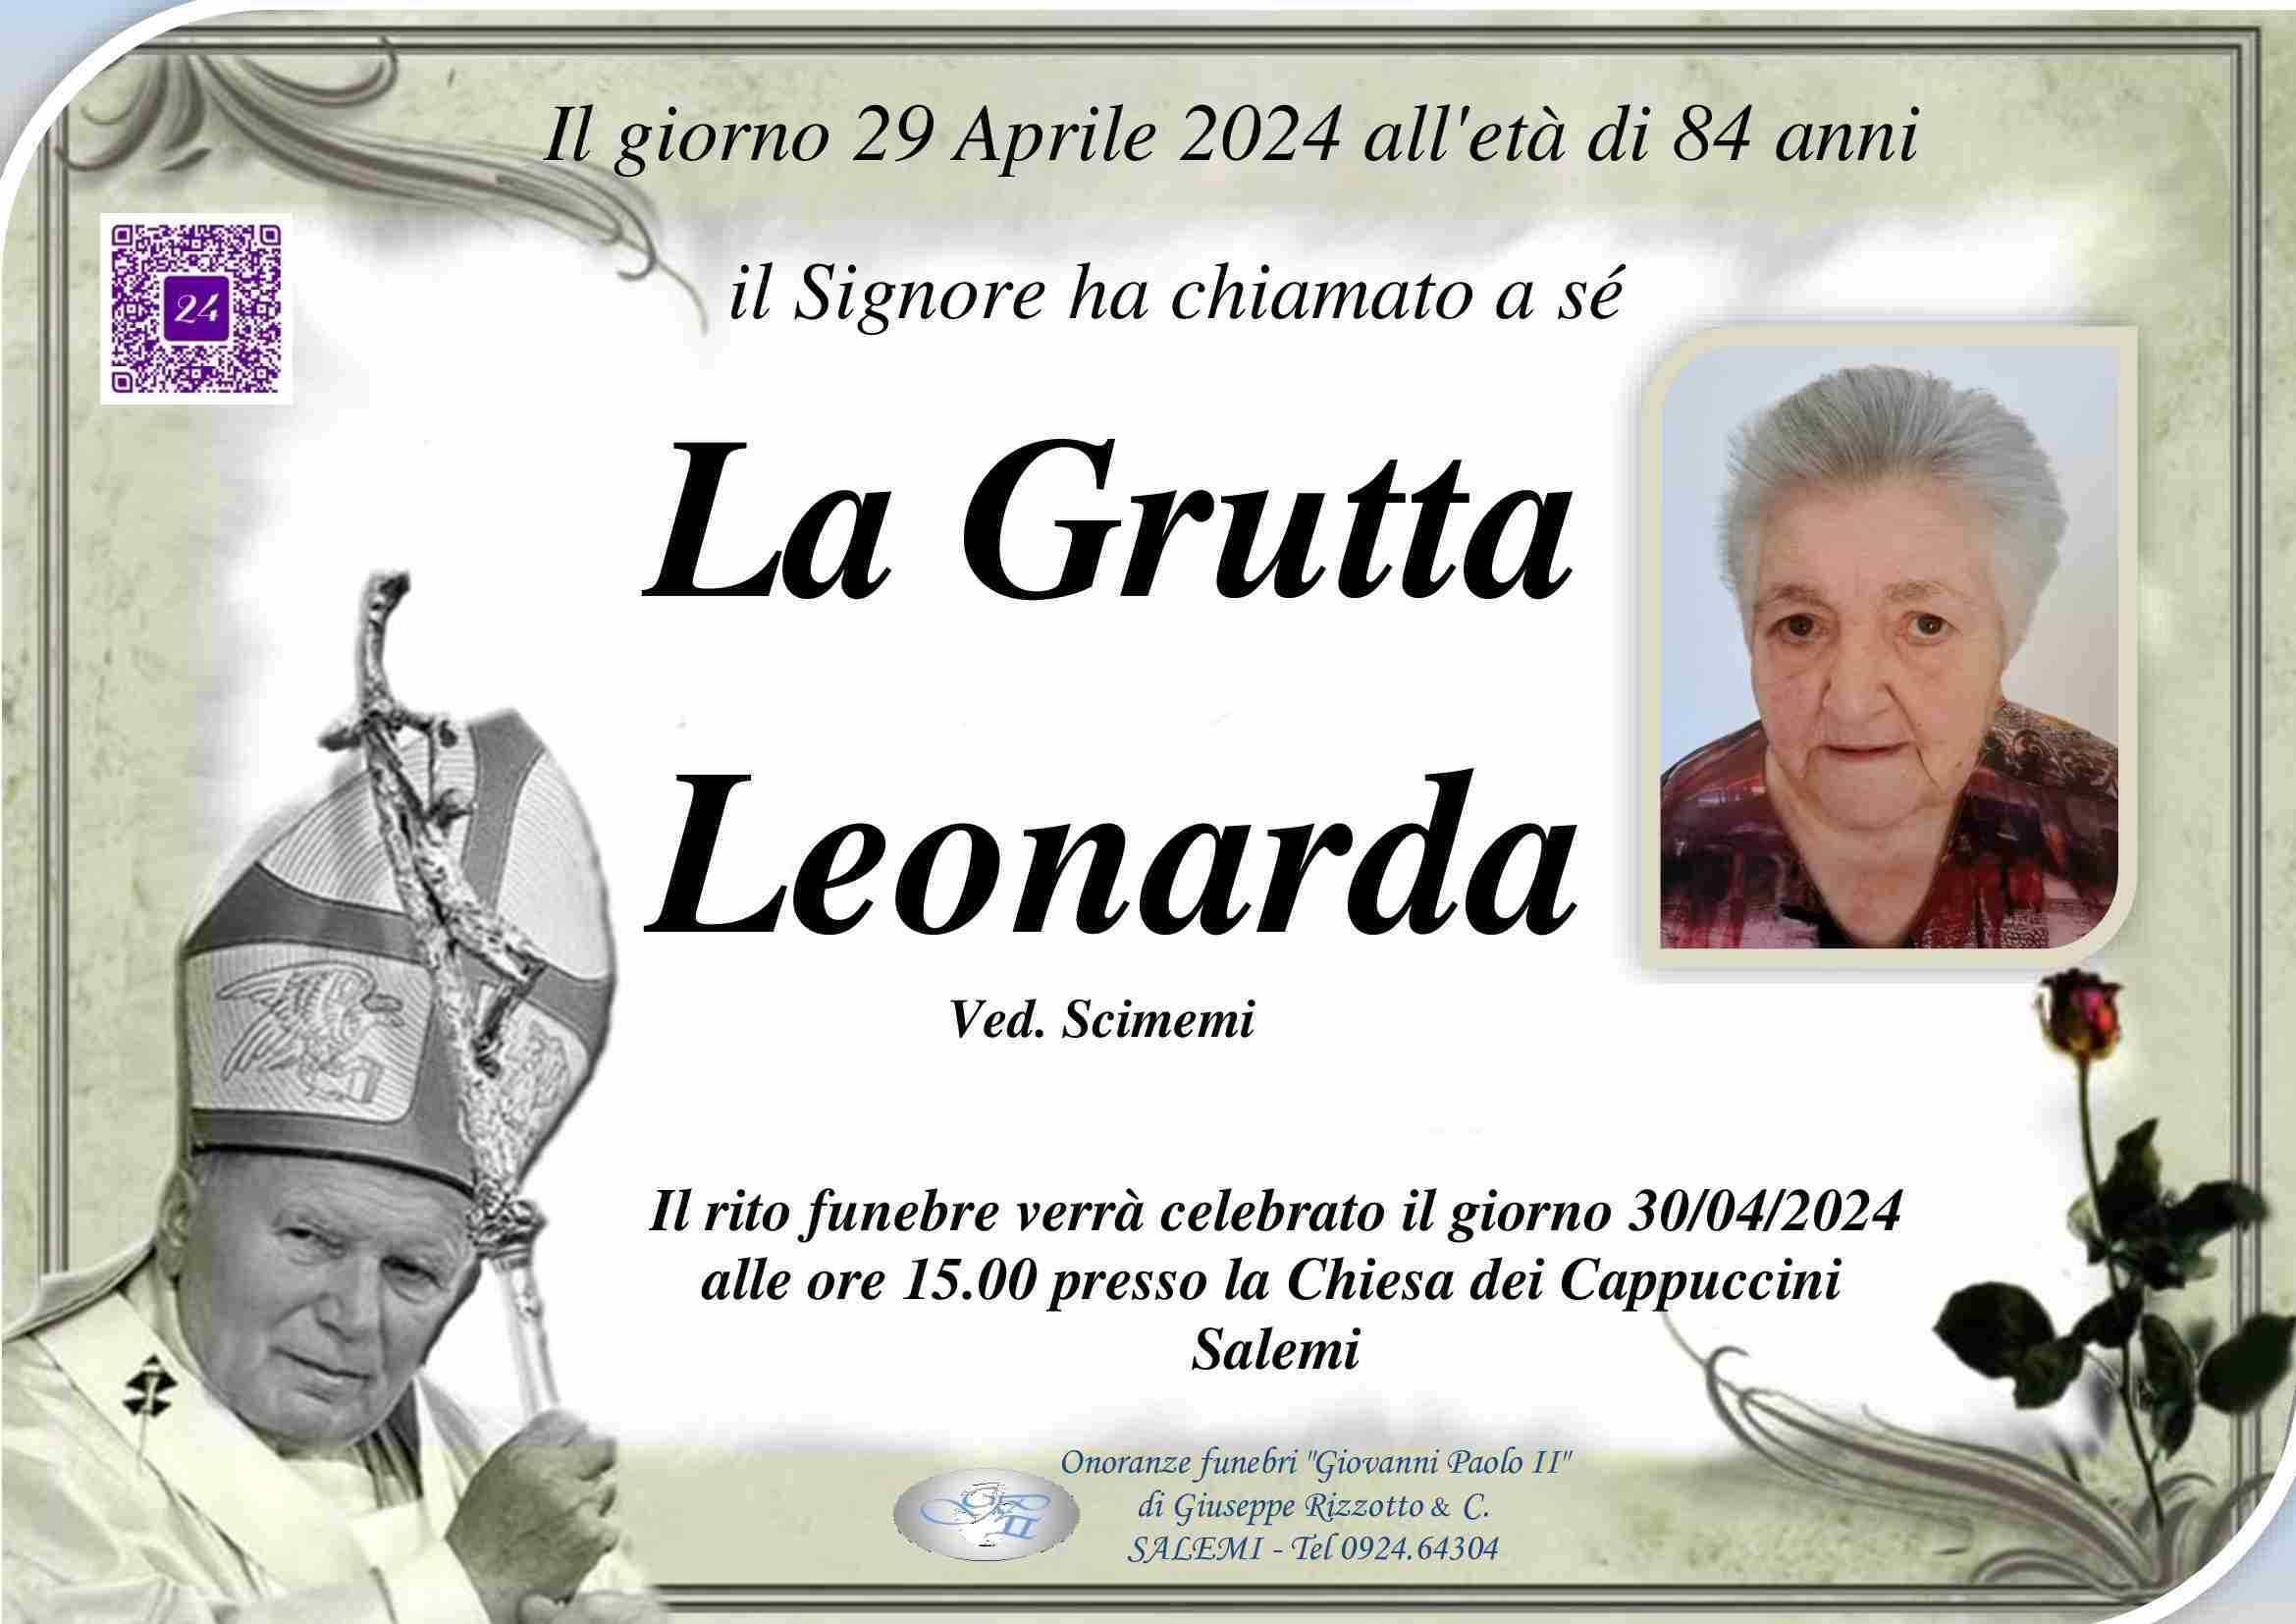 Leonarda La Grutta